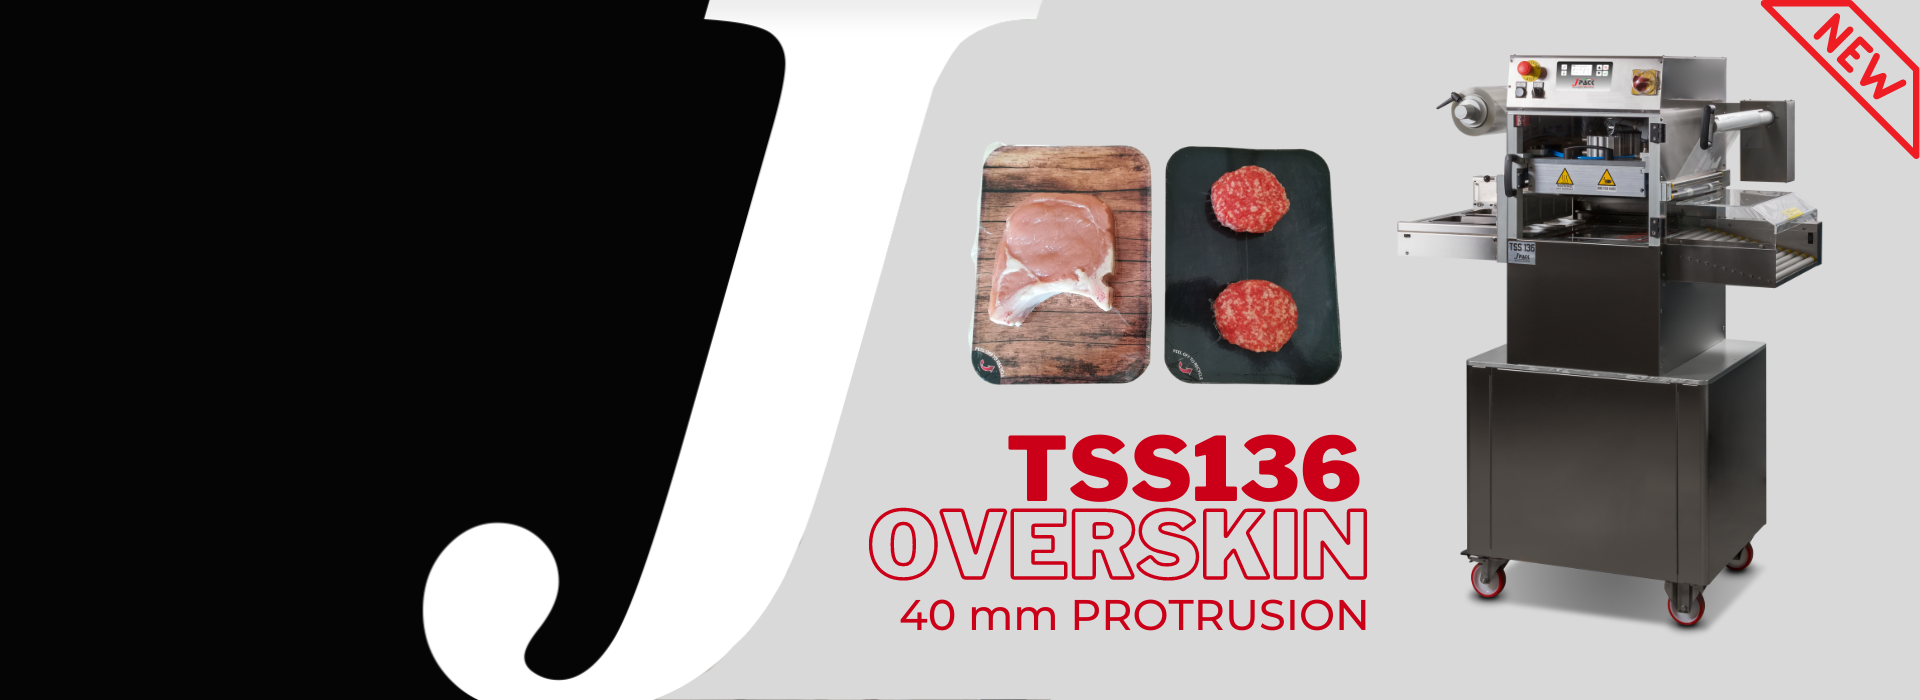 J Pack TSS136-OVERSKIN